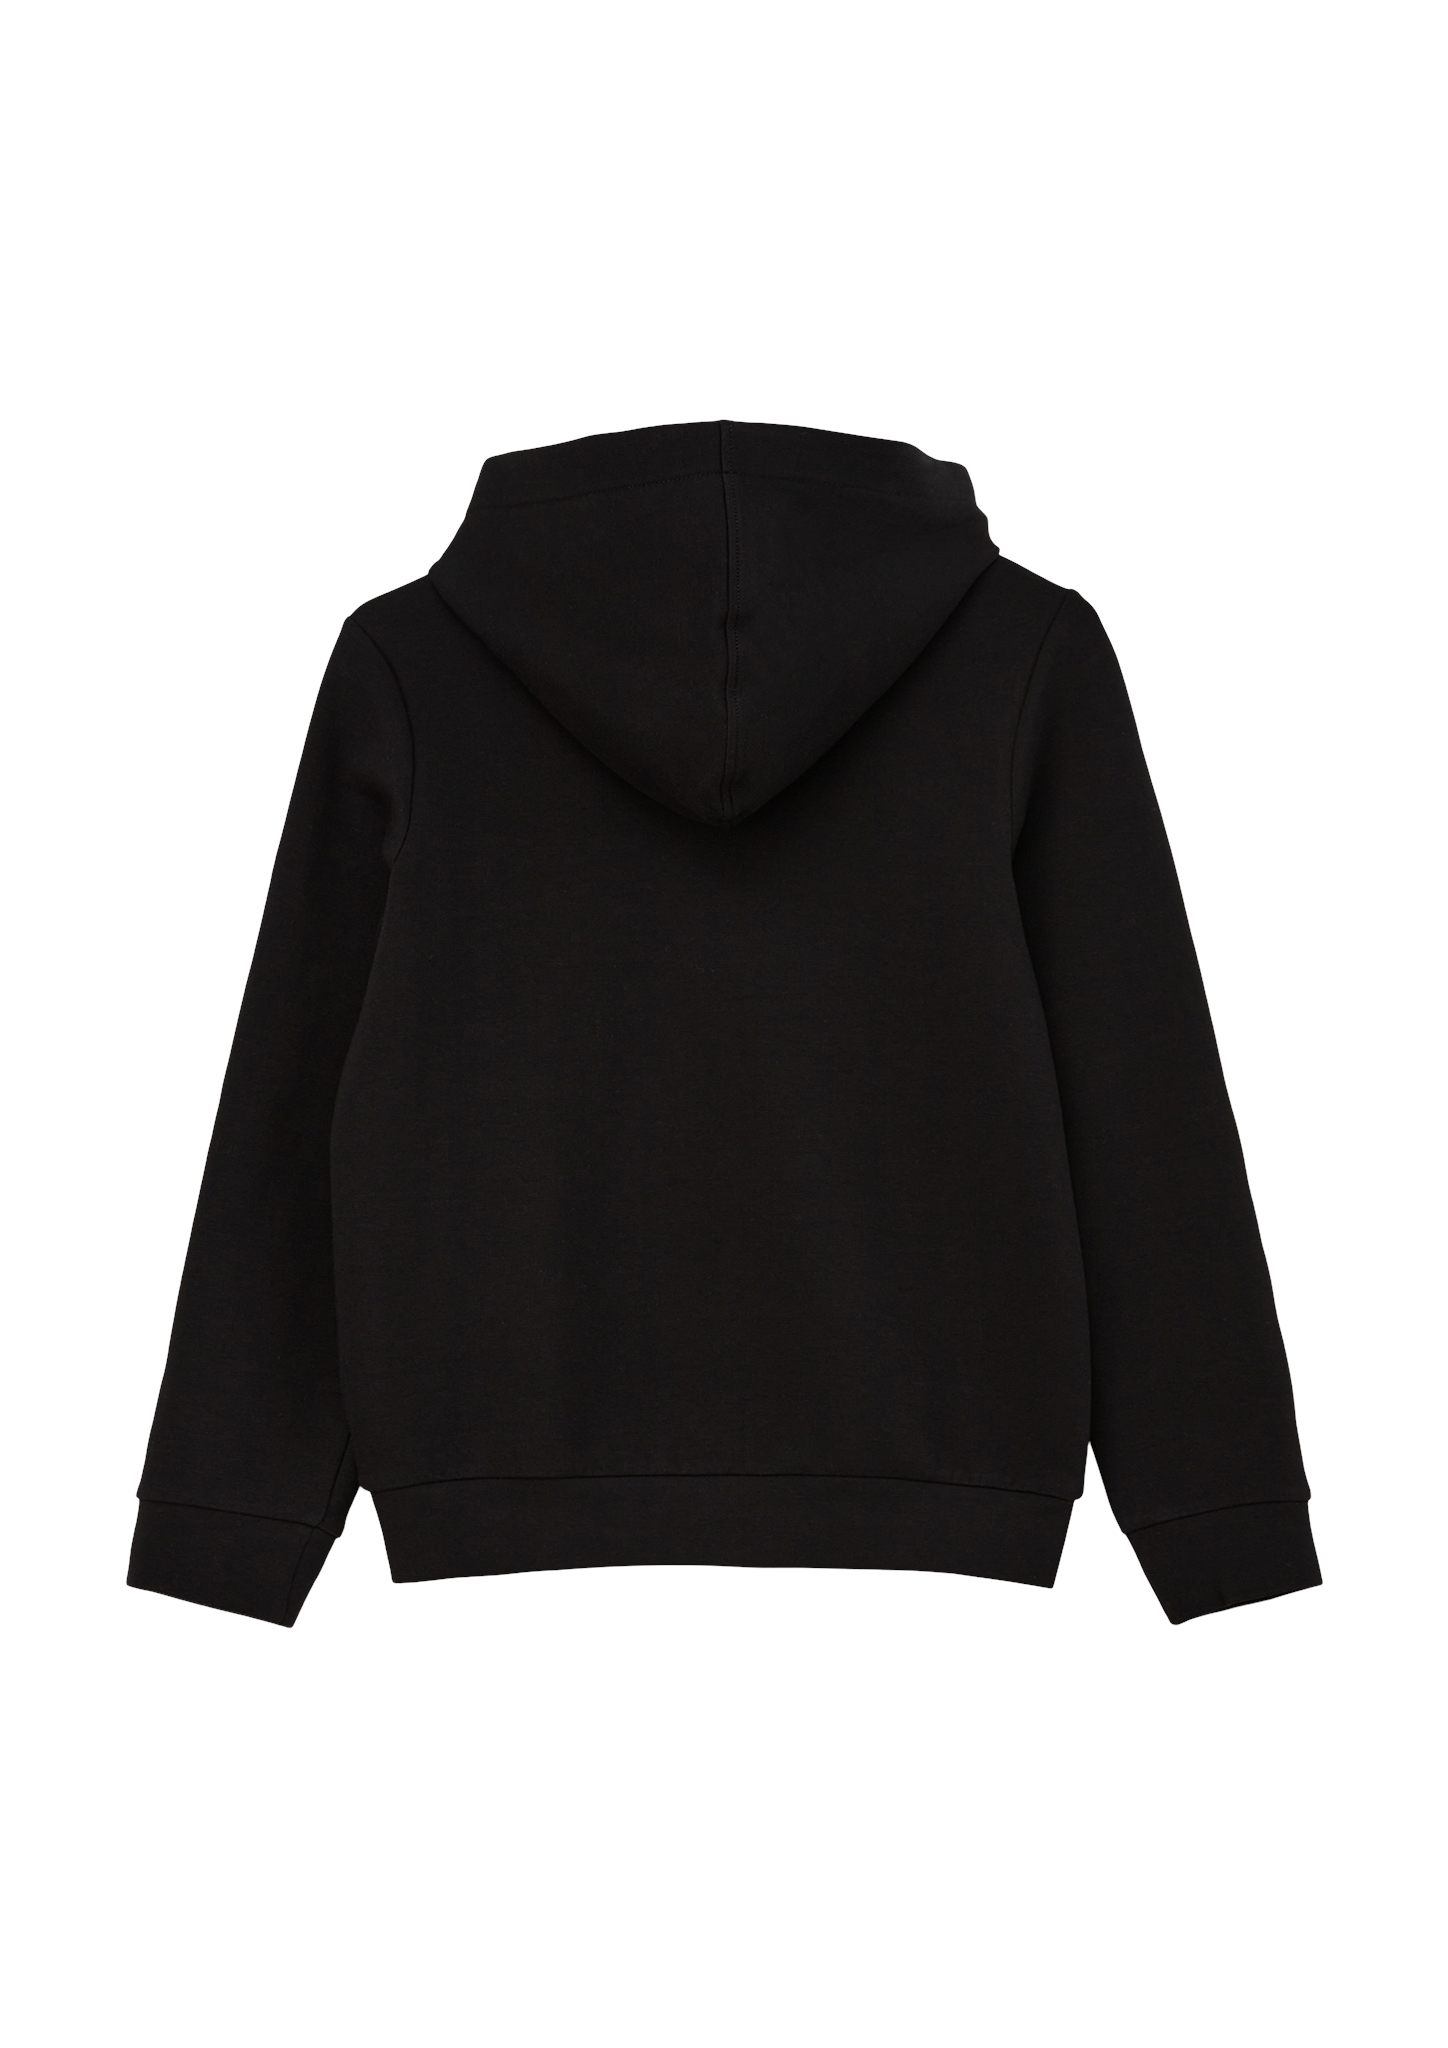 S.OLIVER Sweatshirt 10724782 kaufen | WÖHRL | Sweatshirts